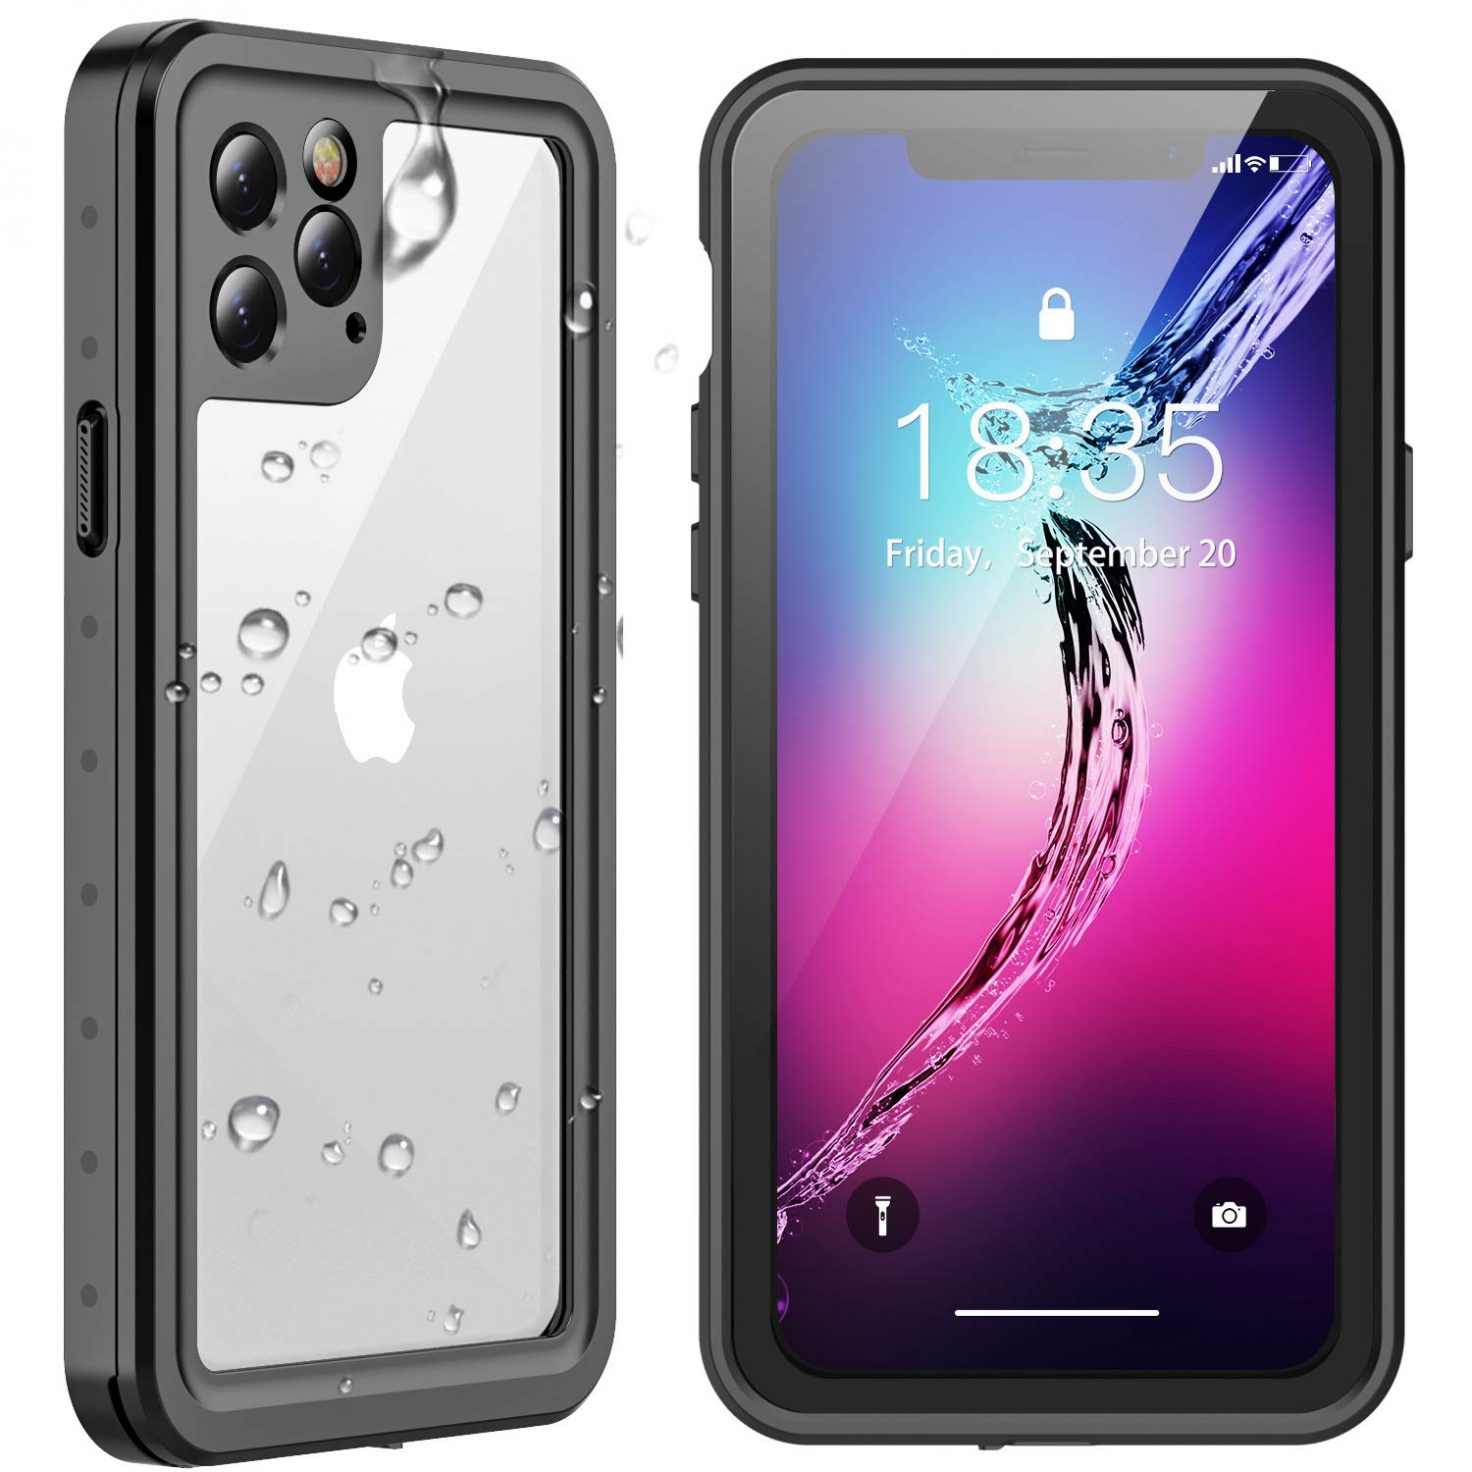 Spidercase-iphone-11-waterproof-case-1472×1472